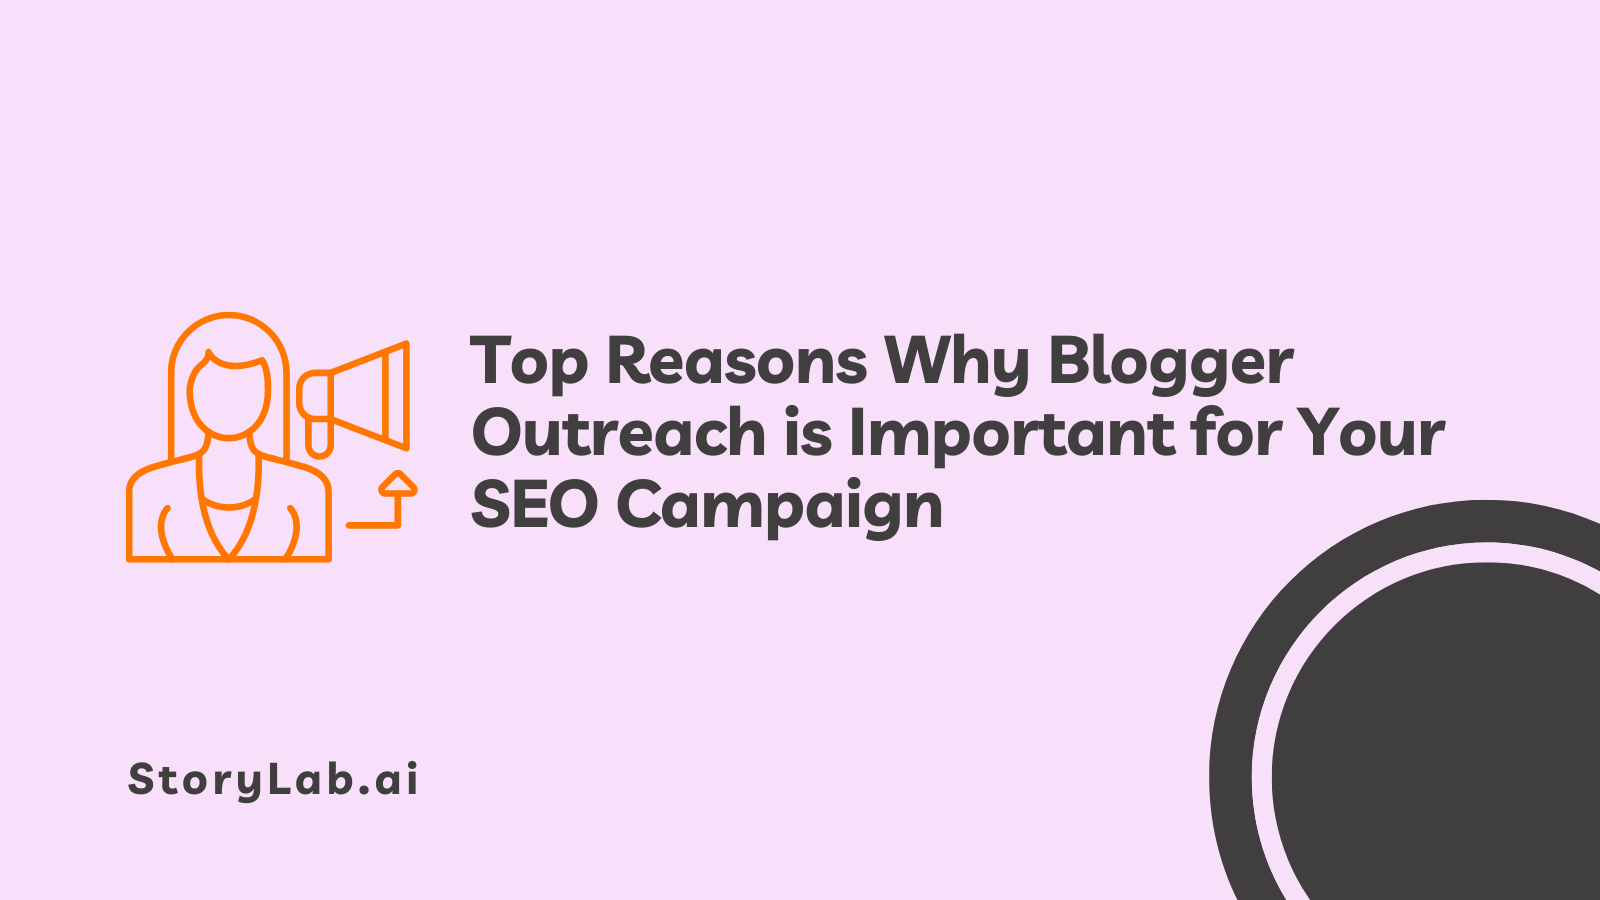 Belangrijkste redenen waarom Blogger Outreach belangrijk is voor uw SEO-campagne